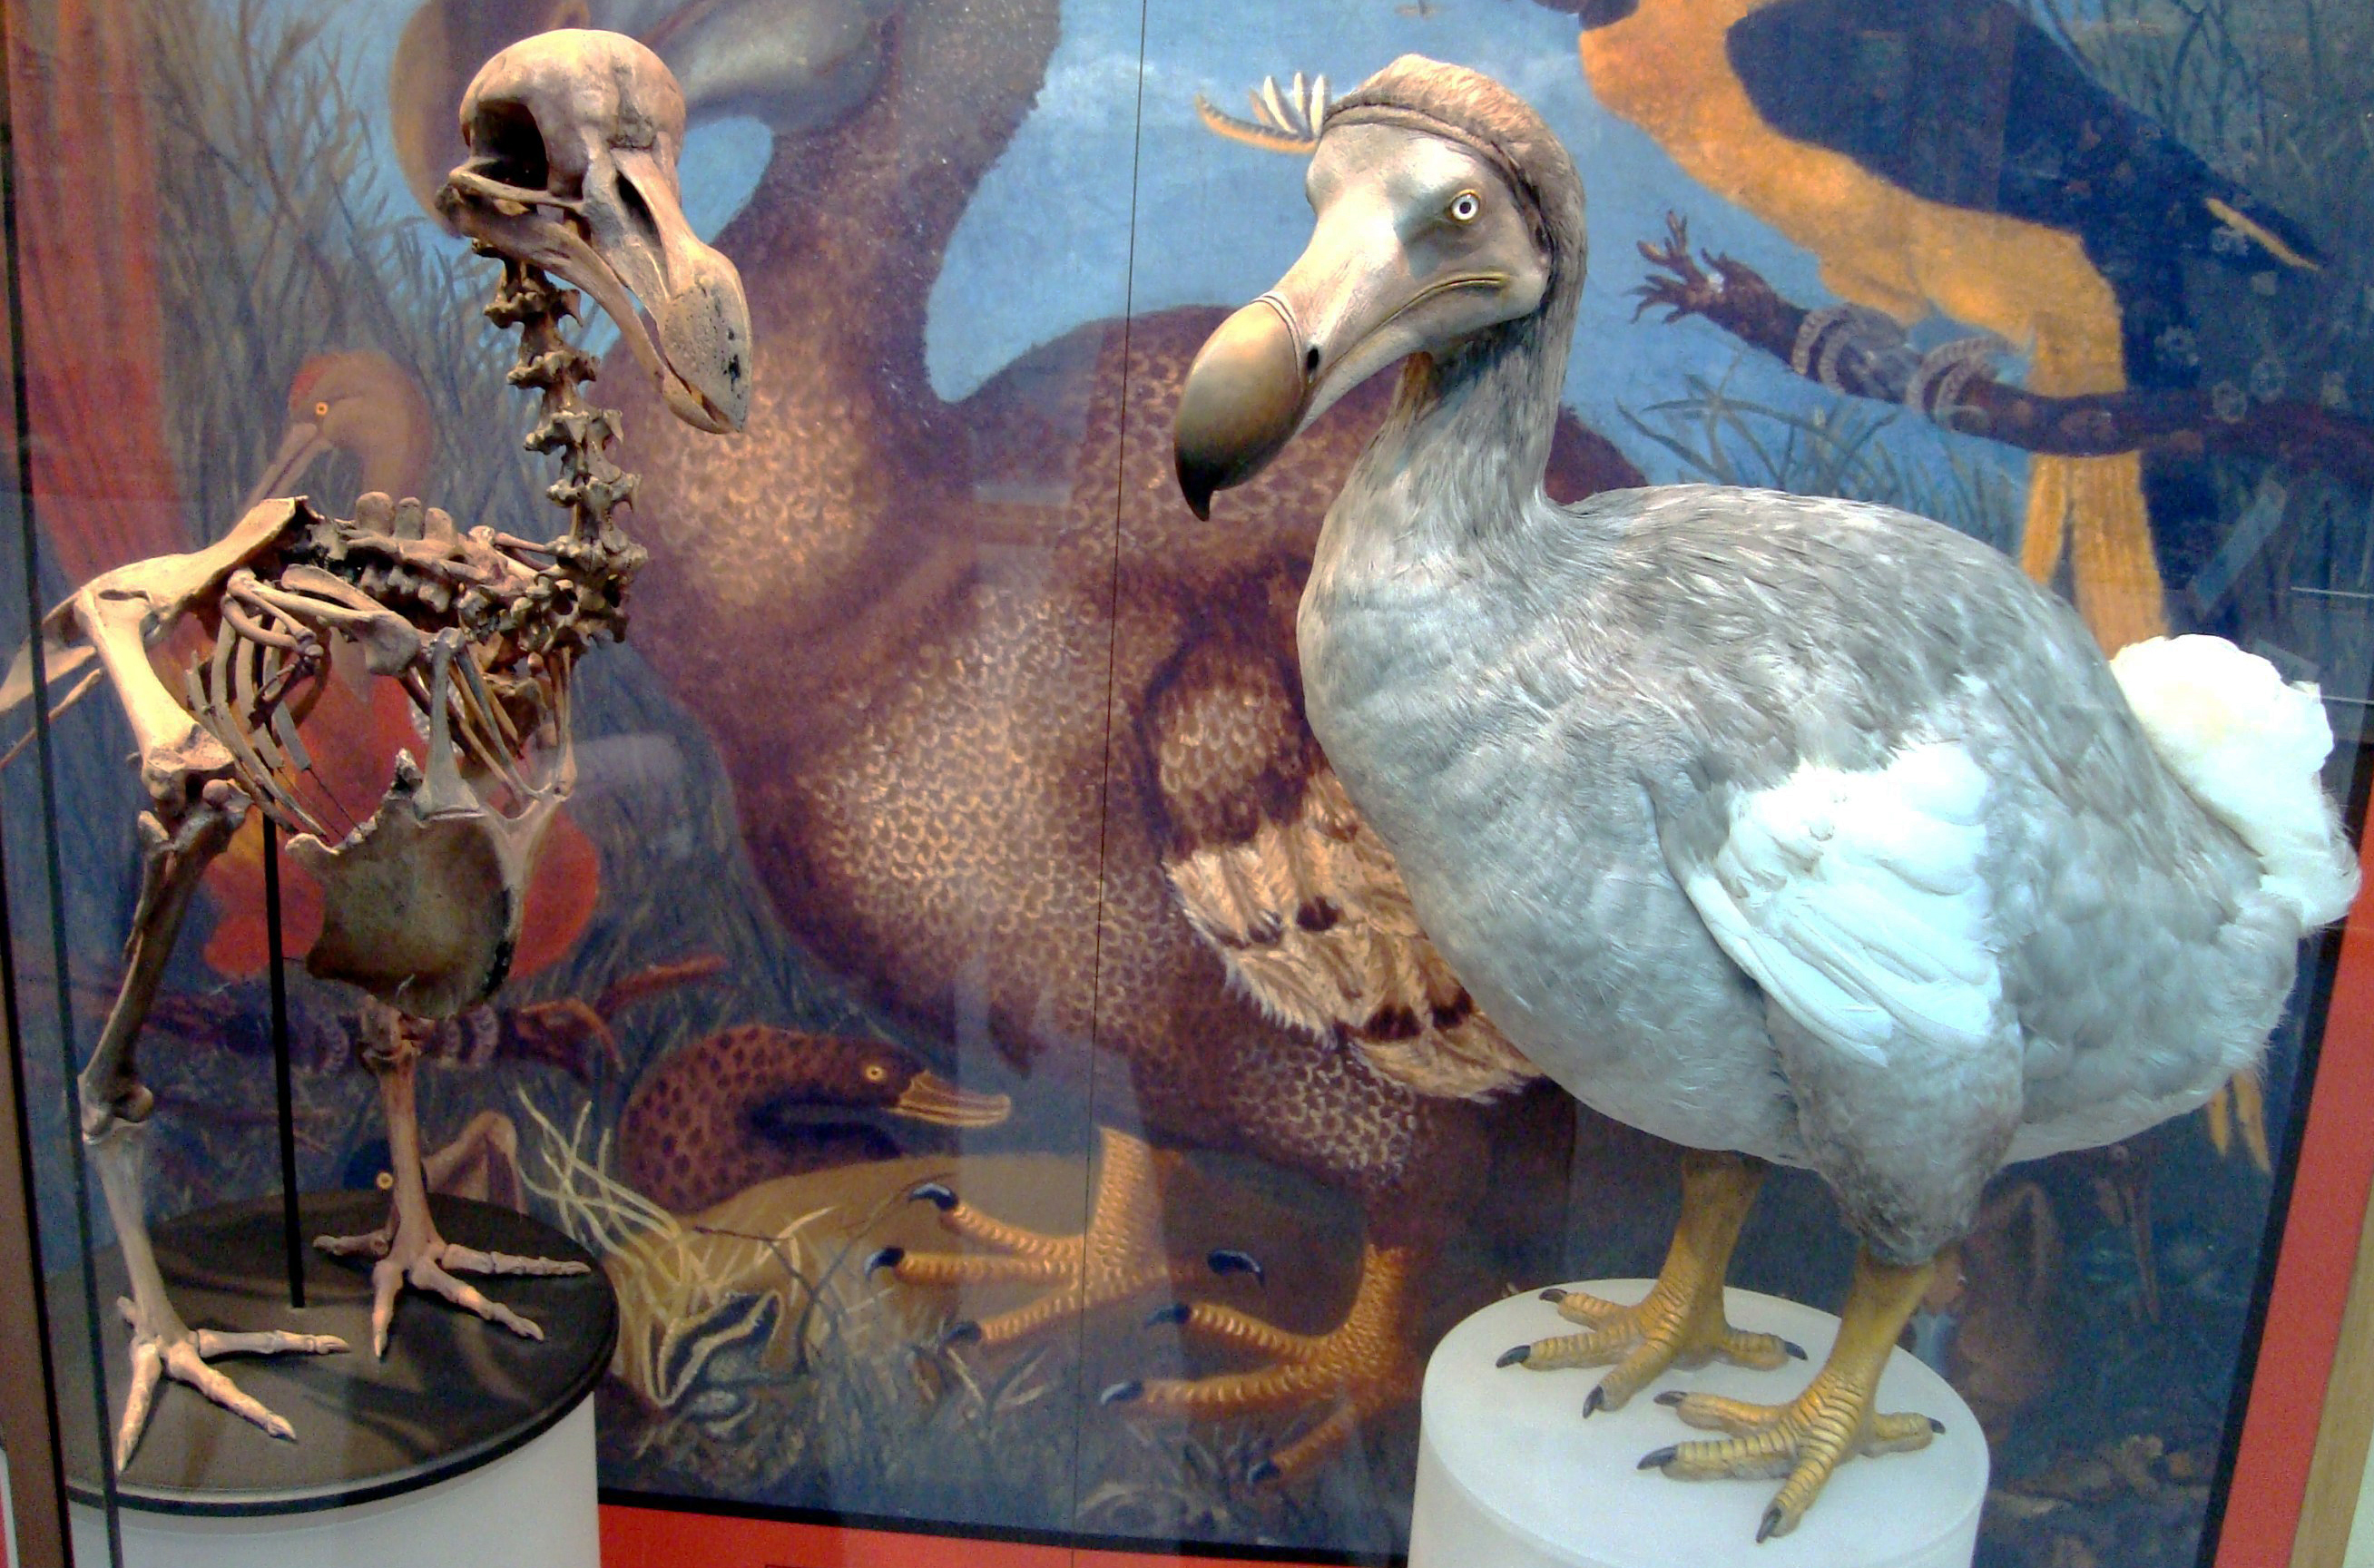 Oxford Dodo display